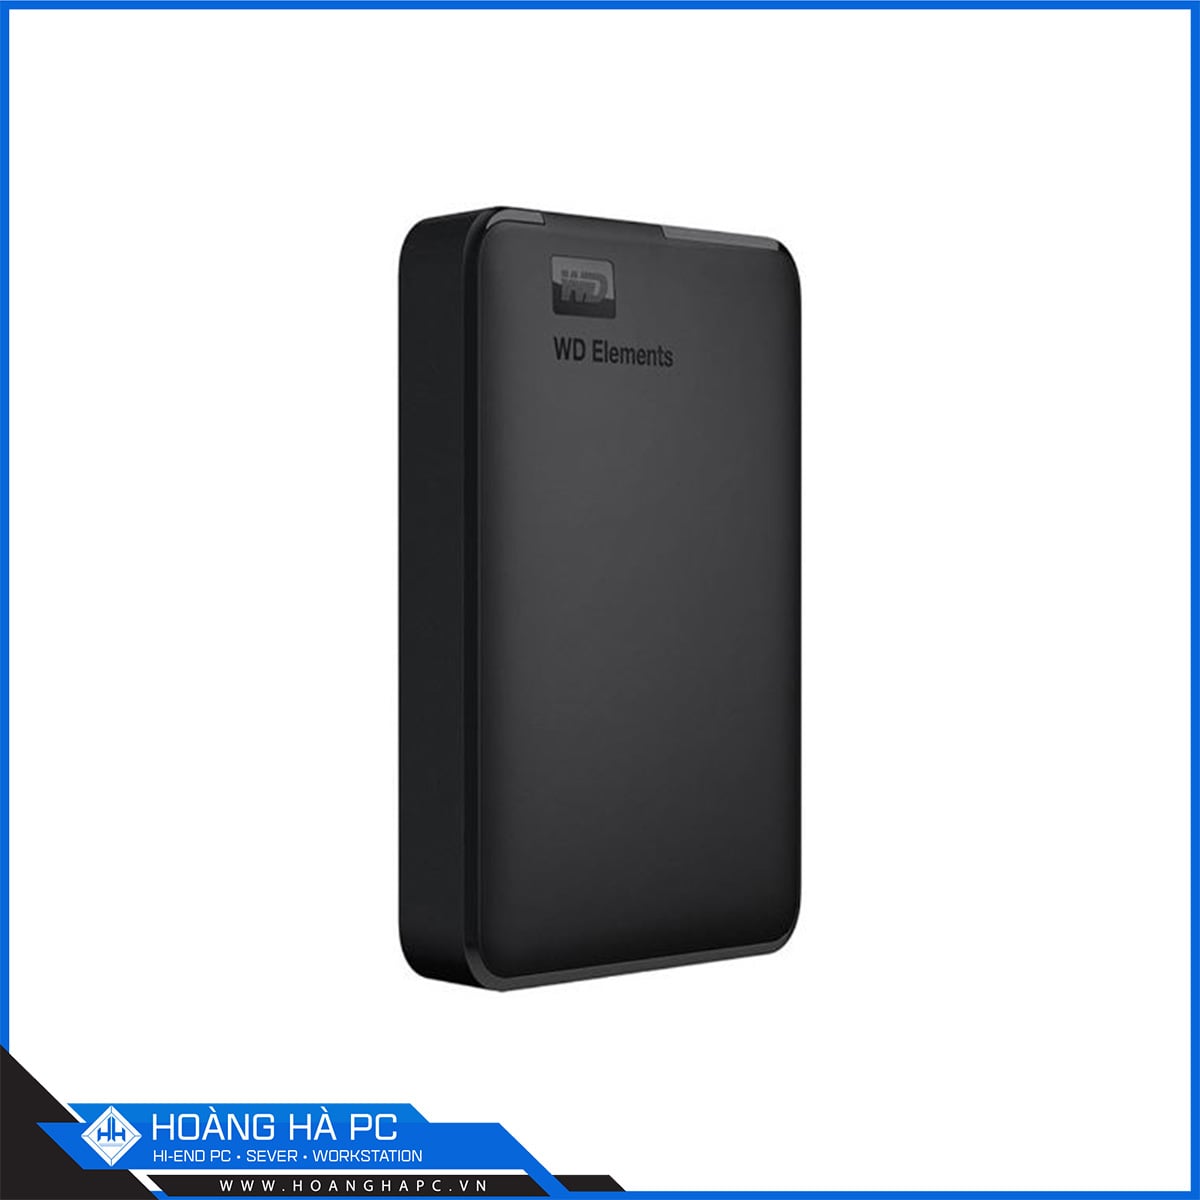 Ổ cứng Western Digital Elements Portable 4TB Black APAC